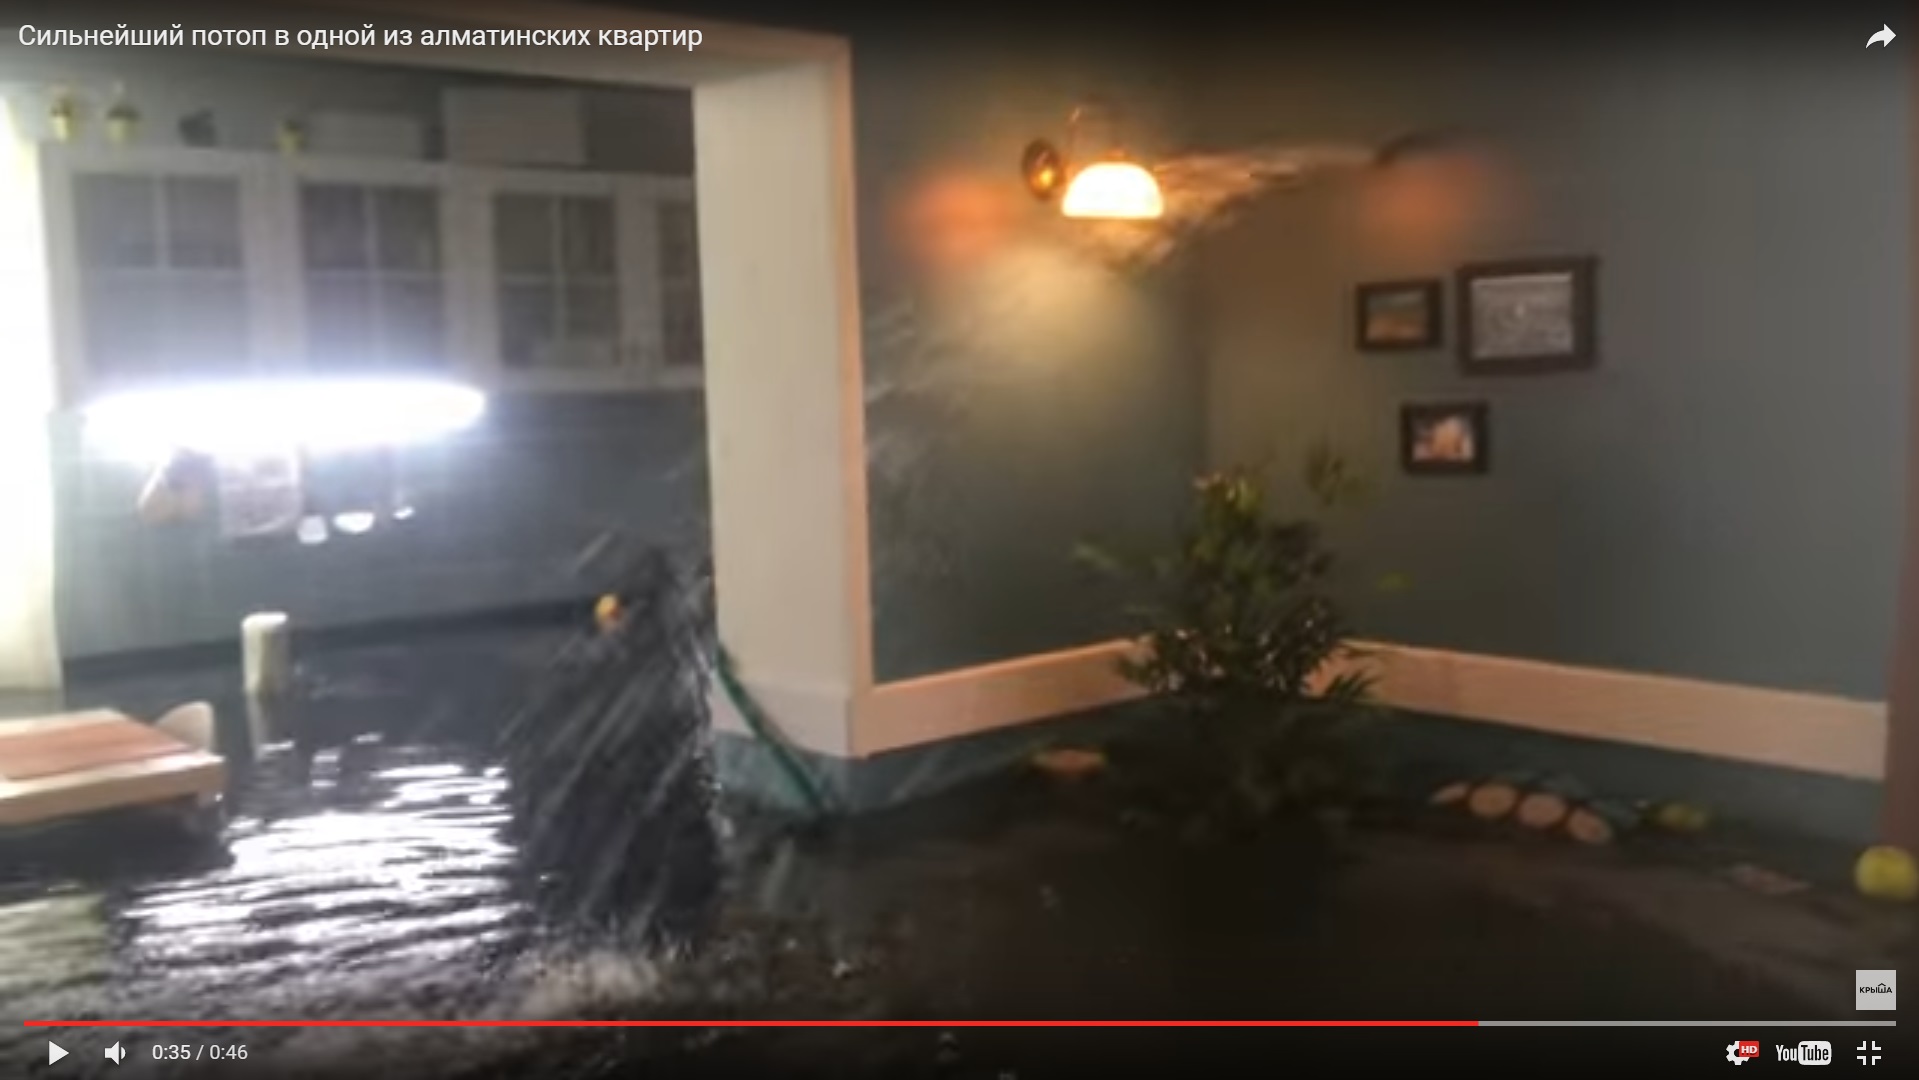 Сонник затапливает квартиру. Потоп в квартире. Сильный потоп в квартире. Потоп в дорогой квартире. Потоп в квартире видео.